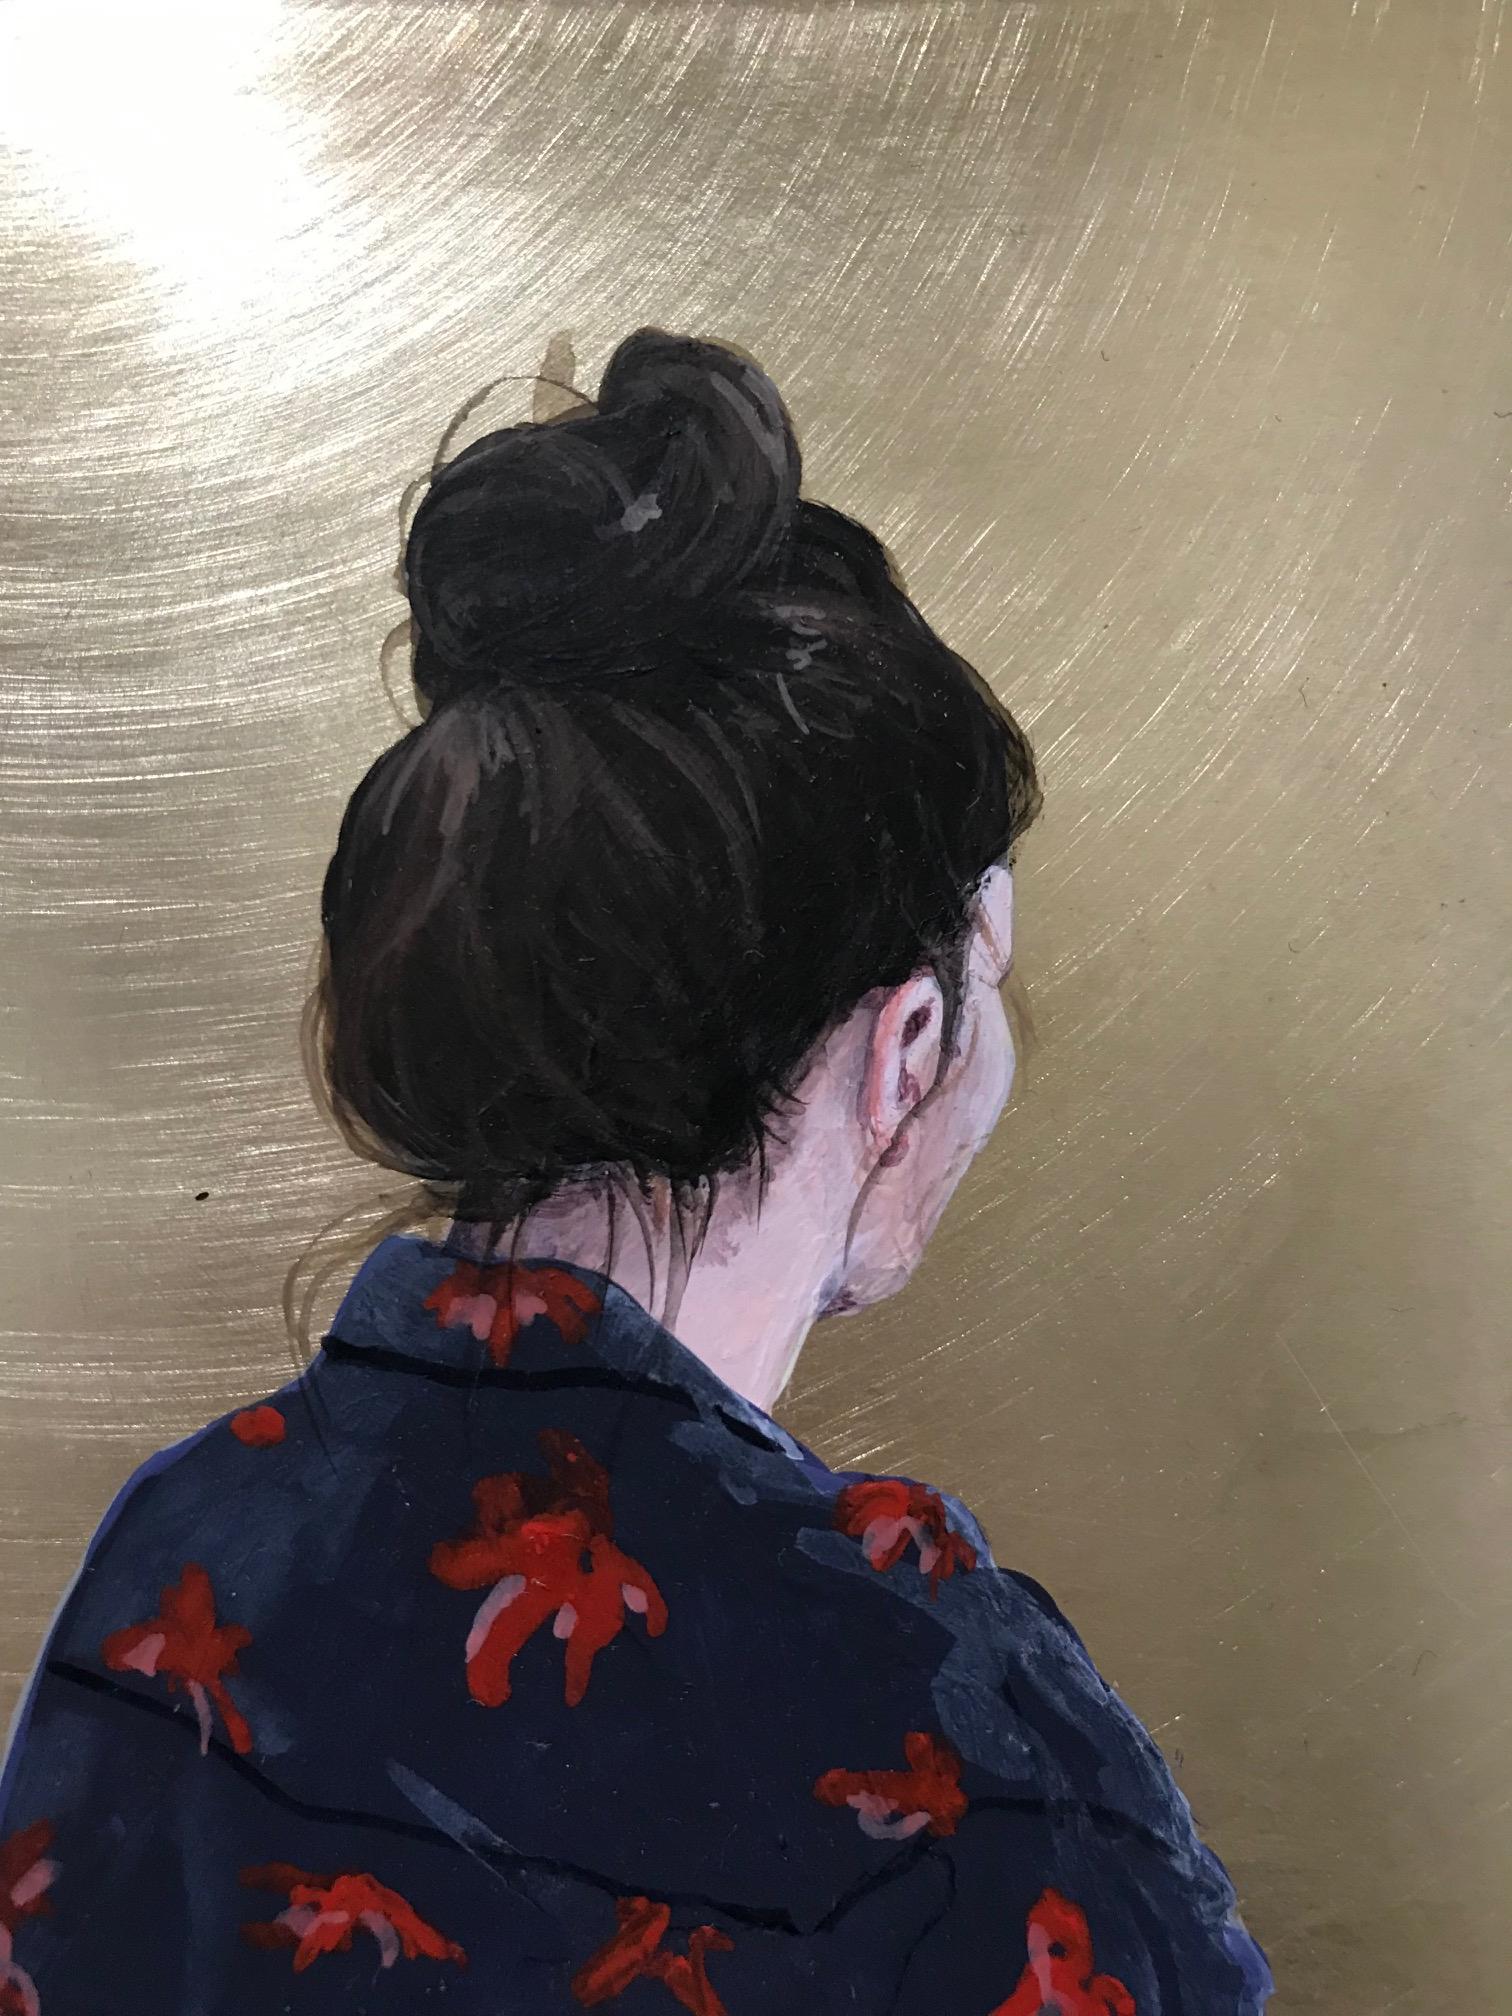 Goldener Moment L'' Zeitgenössisches Porträt eines Mädchens mit blauer Bluse auf Messing – Painting von Karoline Kroiss